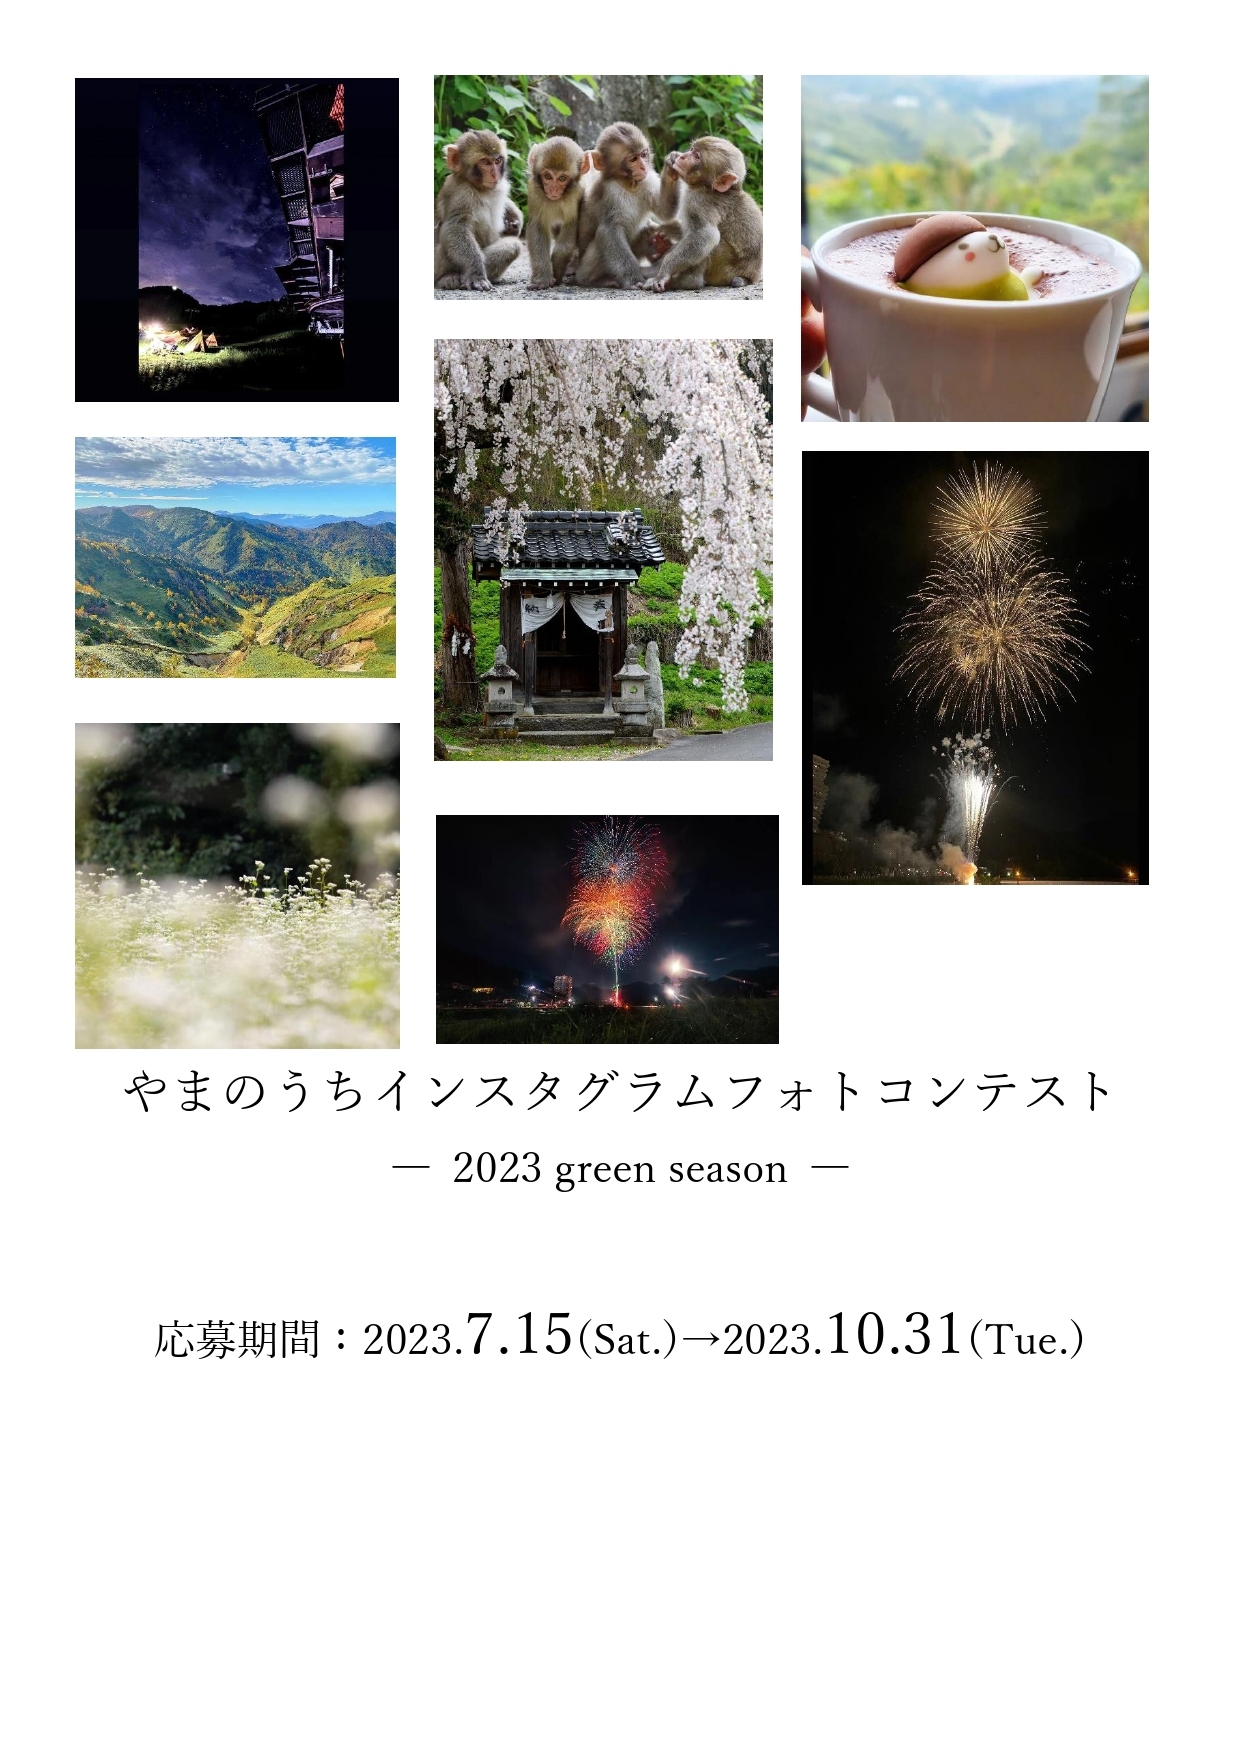 山ノ内町インスタグラムフォトコンテスト -2021 autumn & winter-